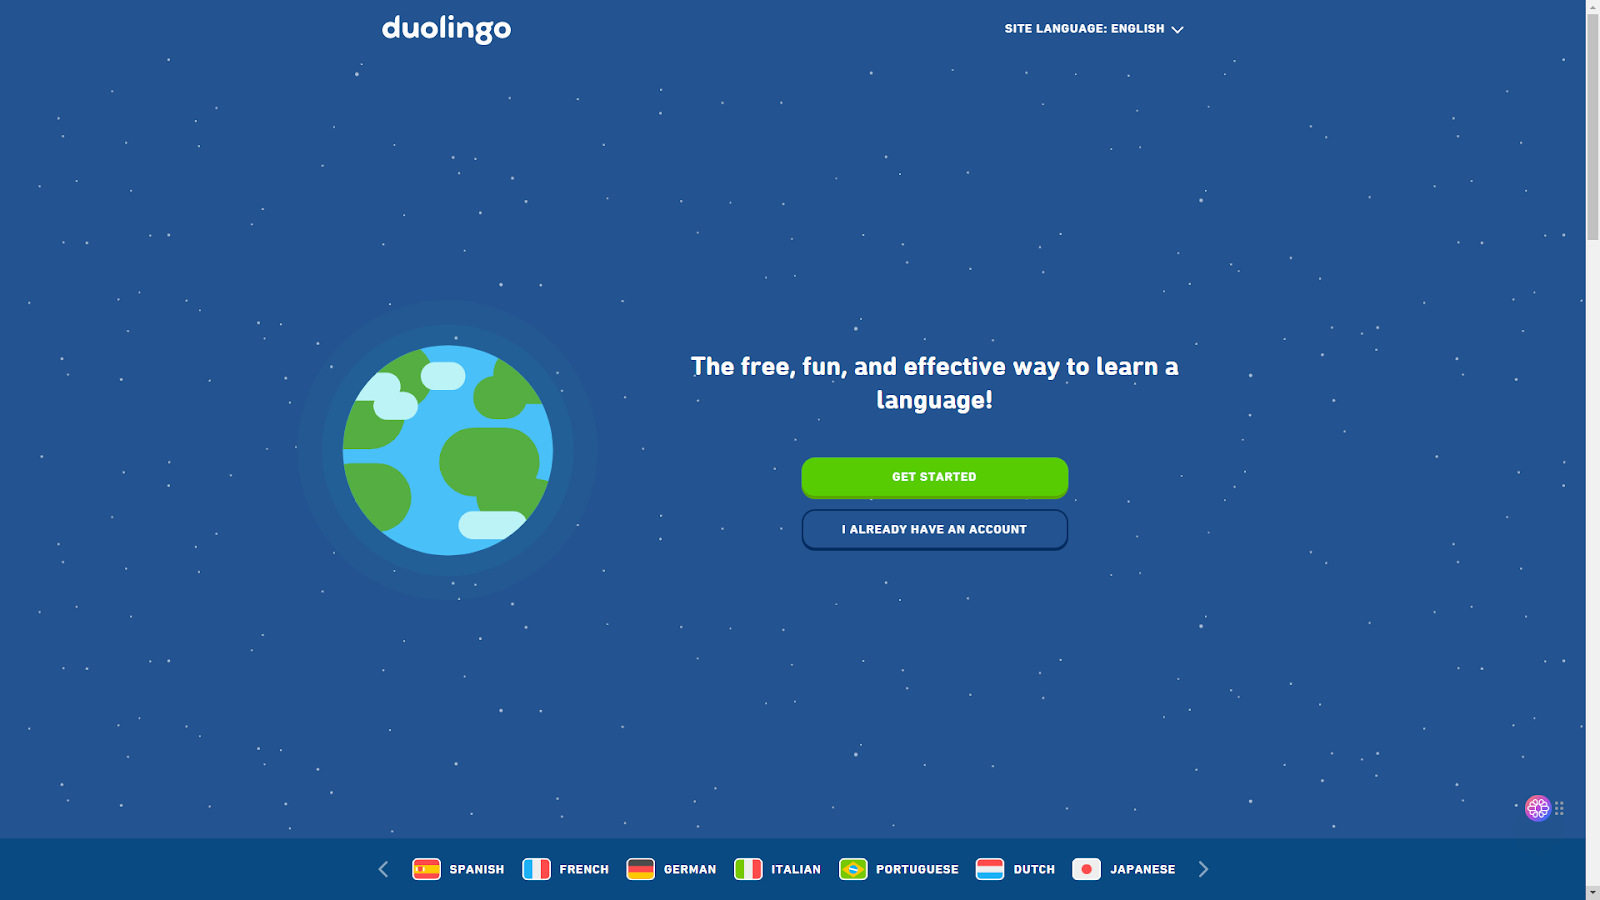 duolingo language learning with AI